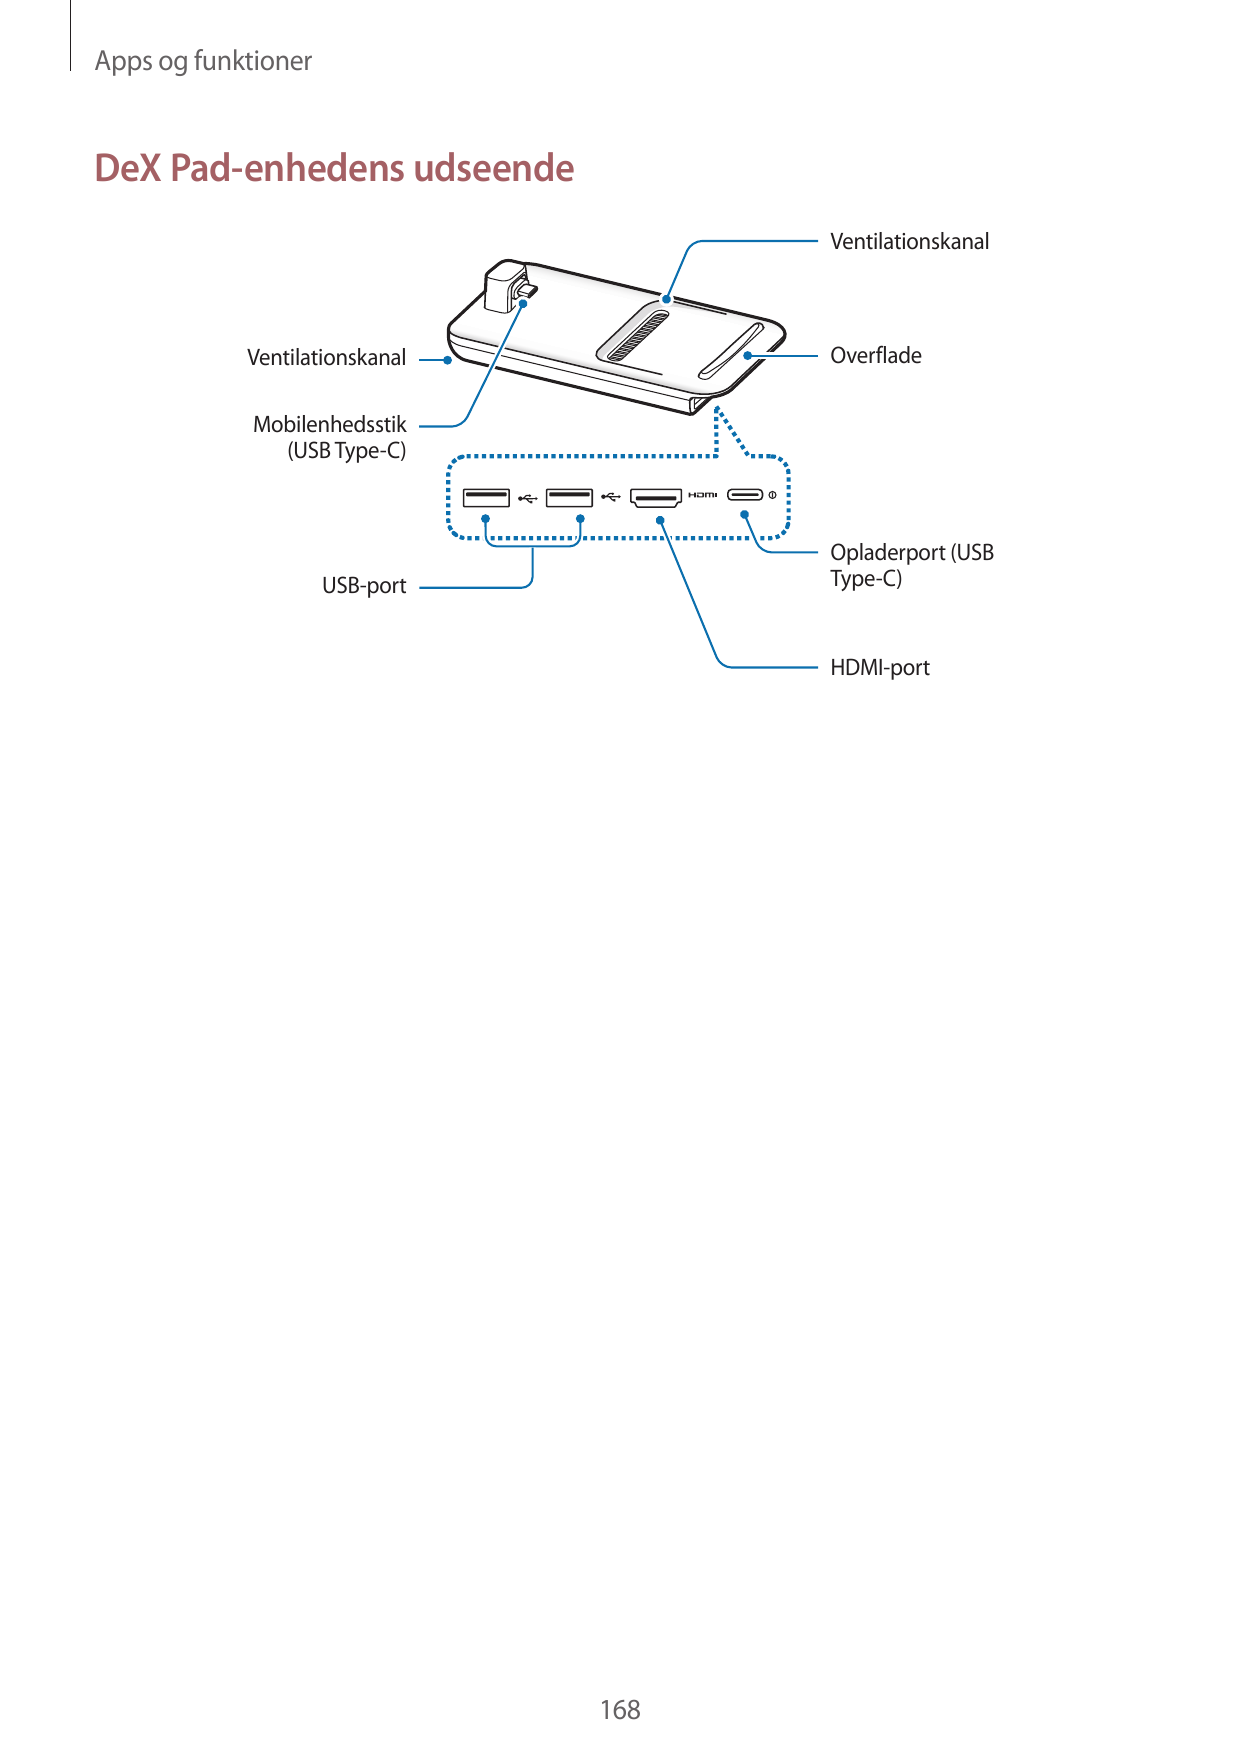 Apps og funktionerDeX Pad-enhedens udseendeVentilationskanalOverfladeVentilationskanalMobilenhedsstik(USB Type-C)Opladerport (US